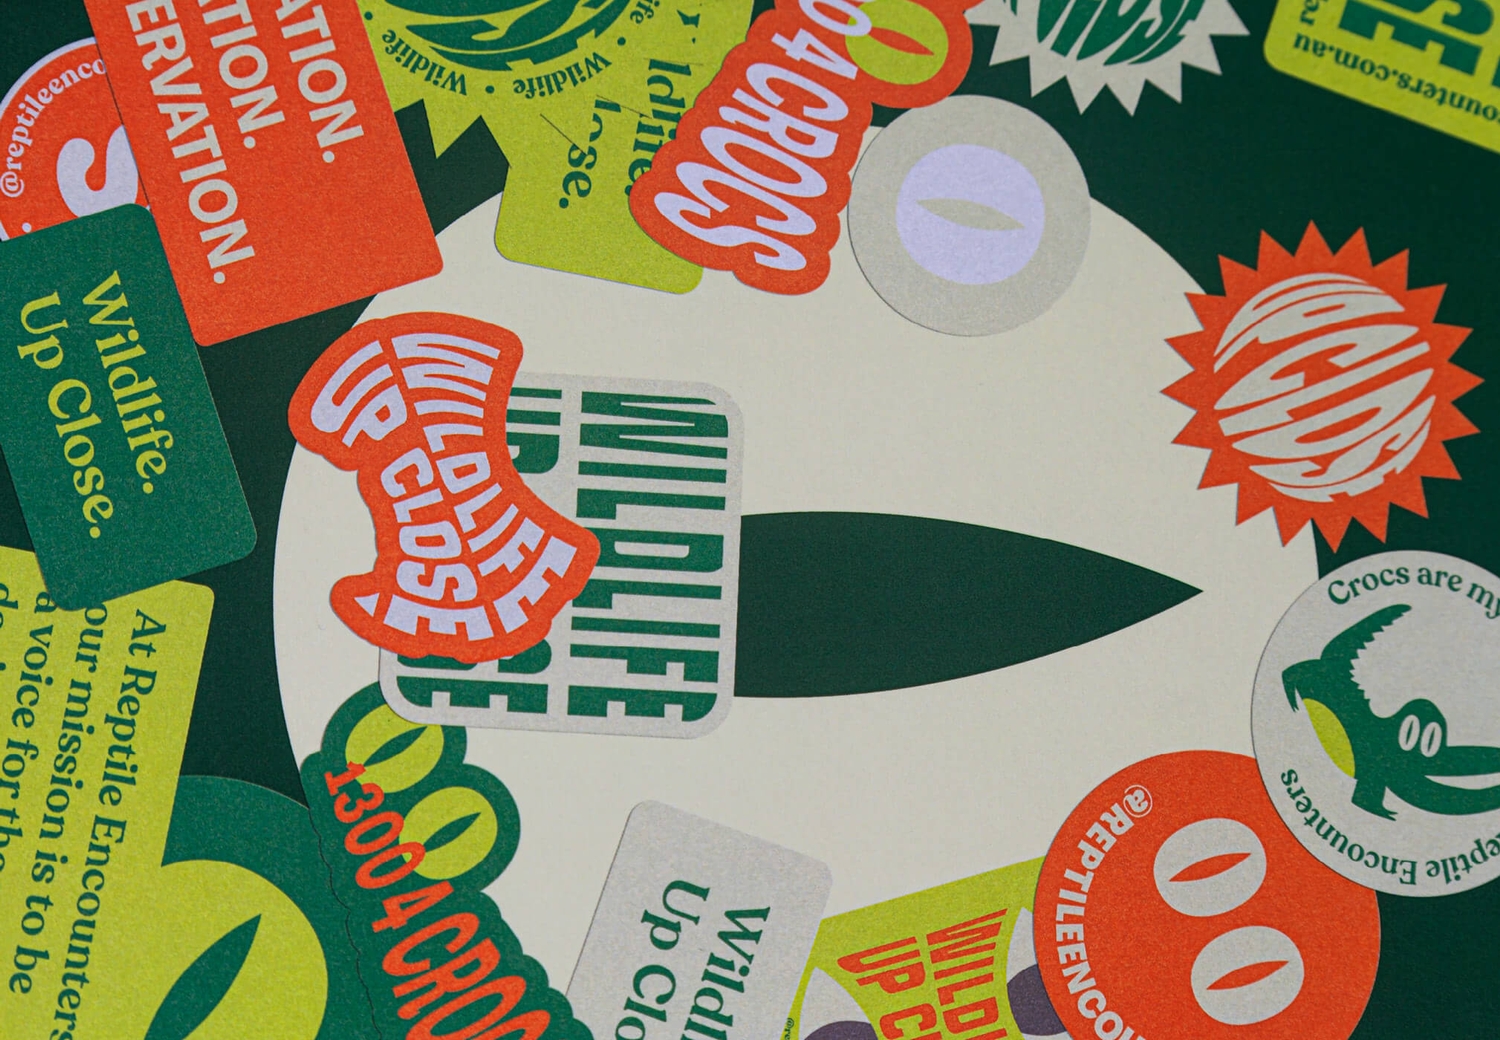 Reptile Encounters - Brand Stickers Wild Life Up Close | Atollon - a design company